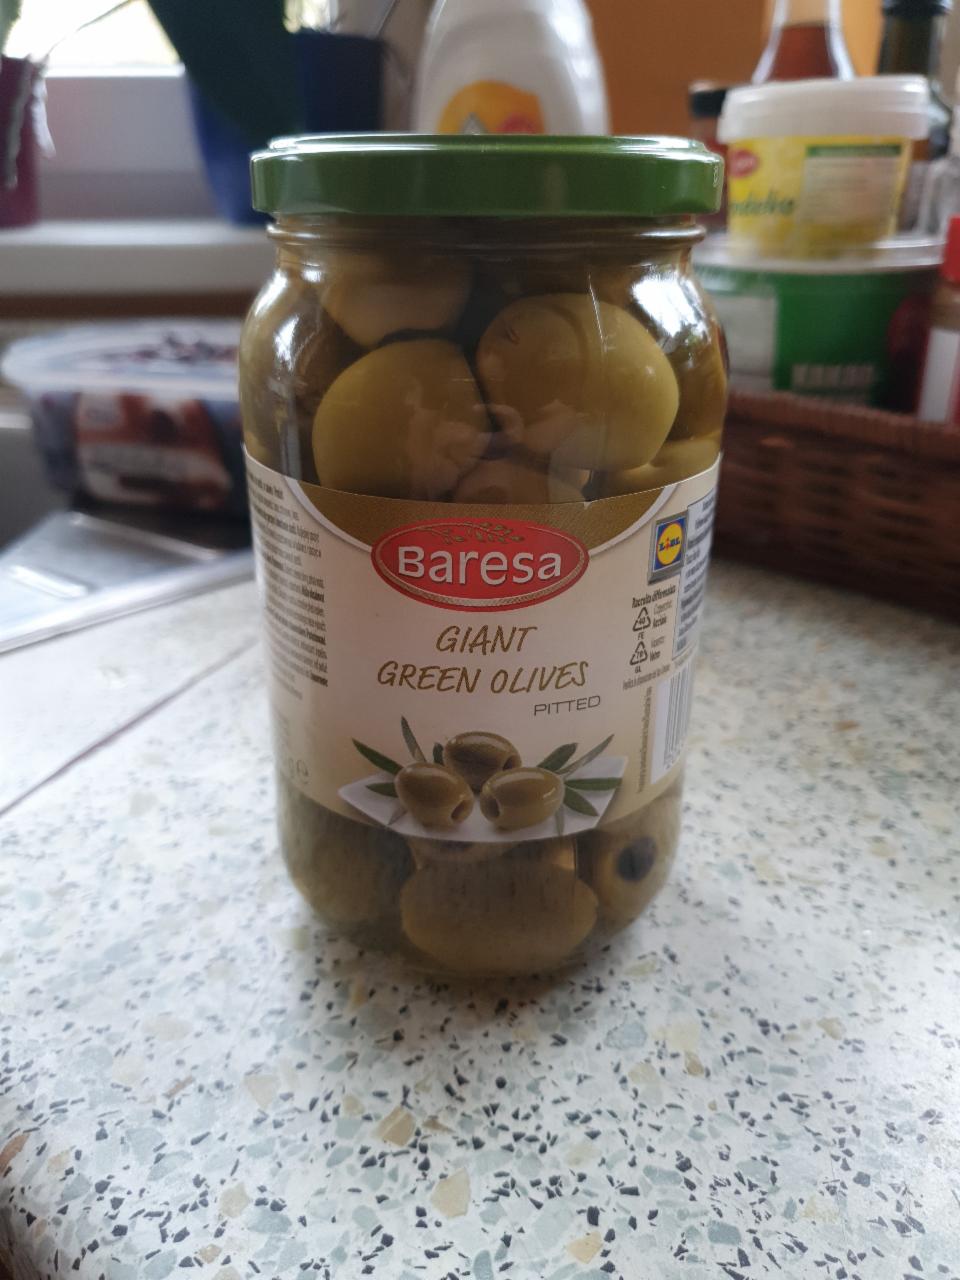 Fotografie - Giant green olives pitted (zelené olivy obří bez pecek) Baresa